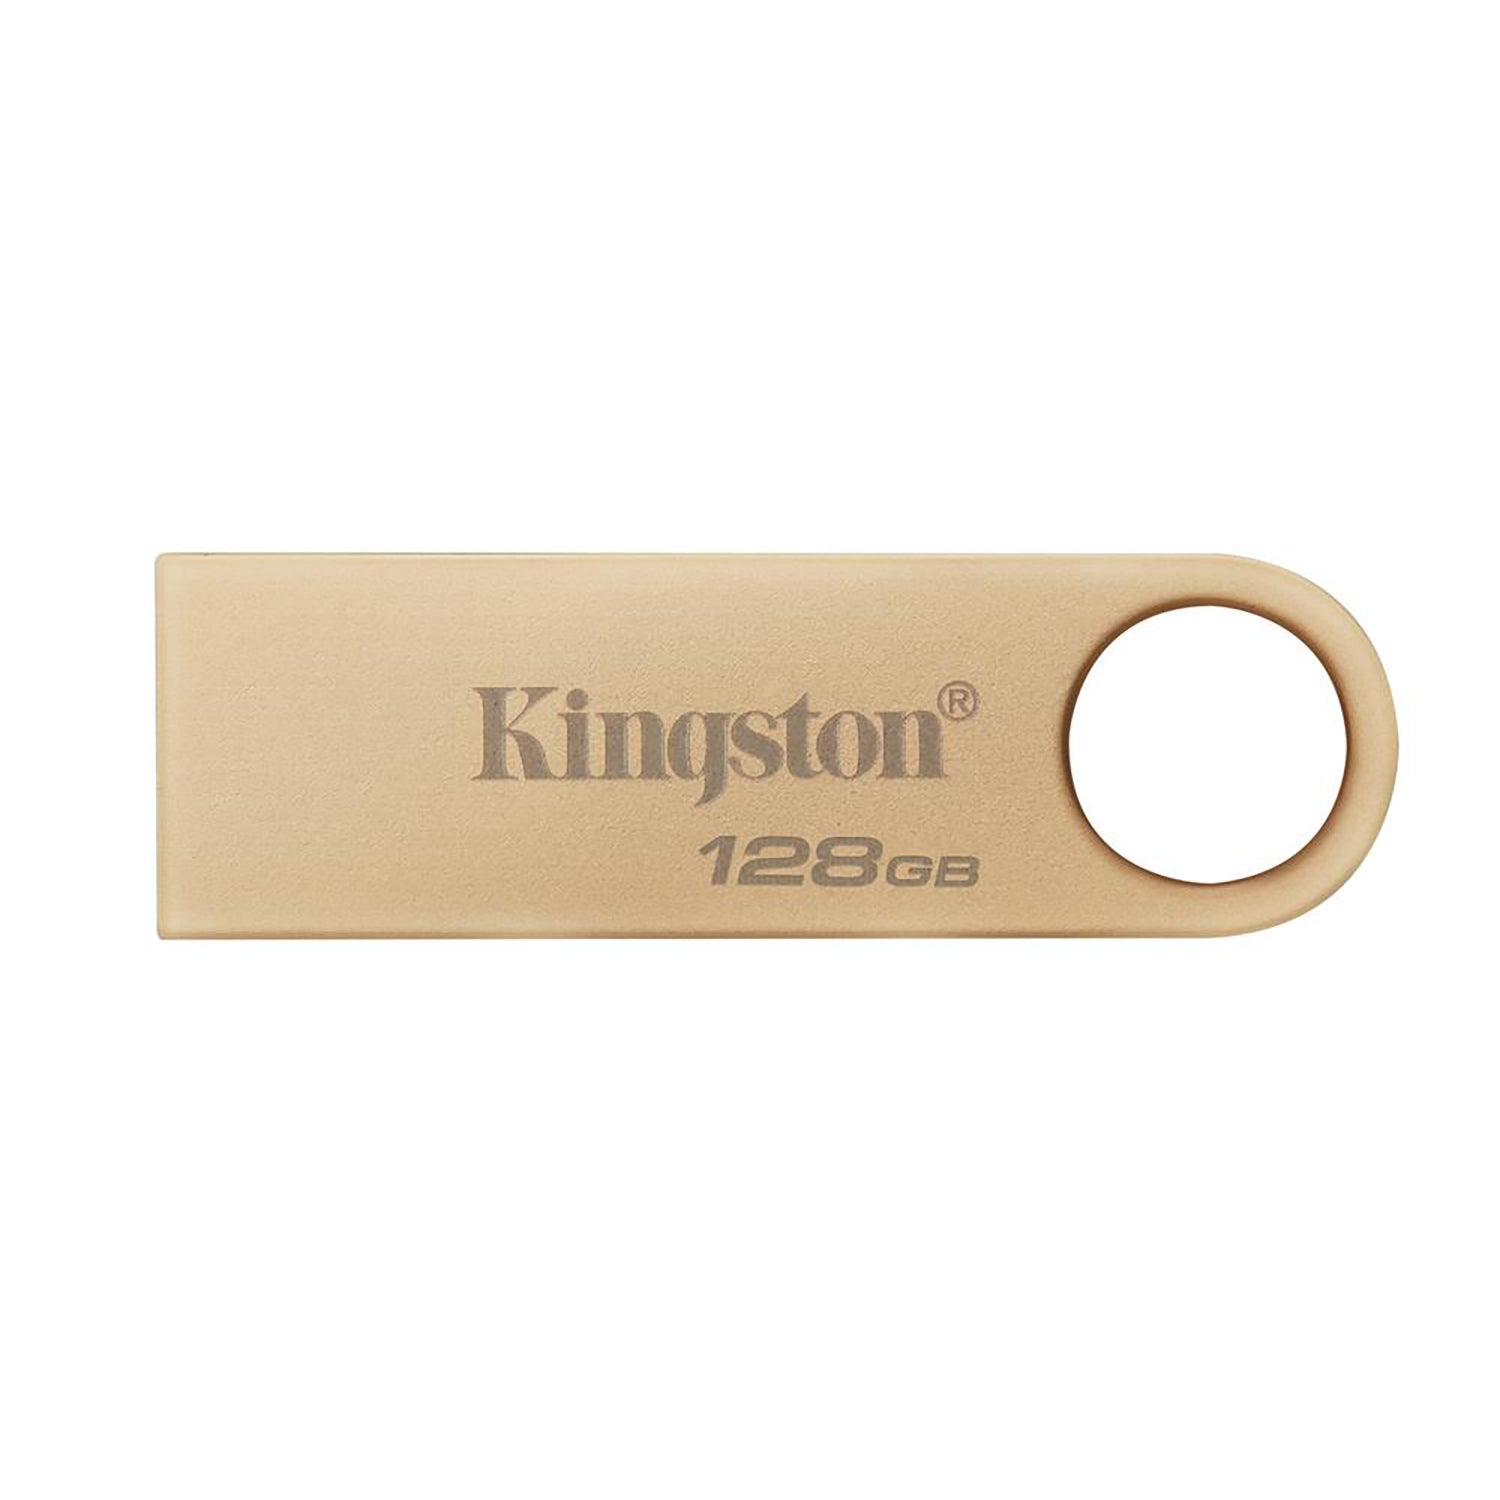 Kingston - Clé USB 3.2 DataTraveler SE9 G3, 220MB/s, Boitier en Métal, Capacité de 128GO